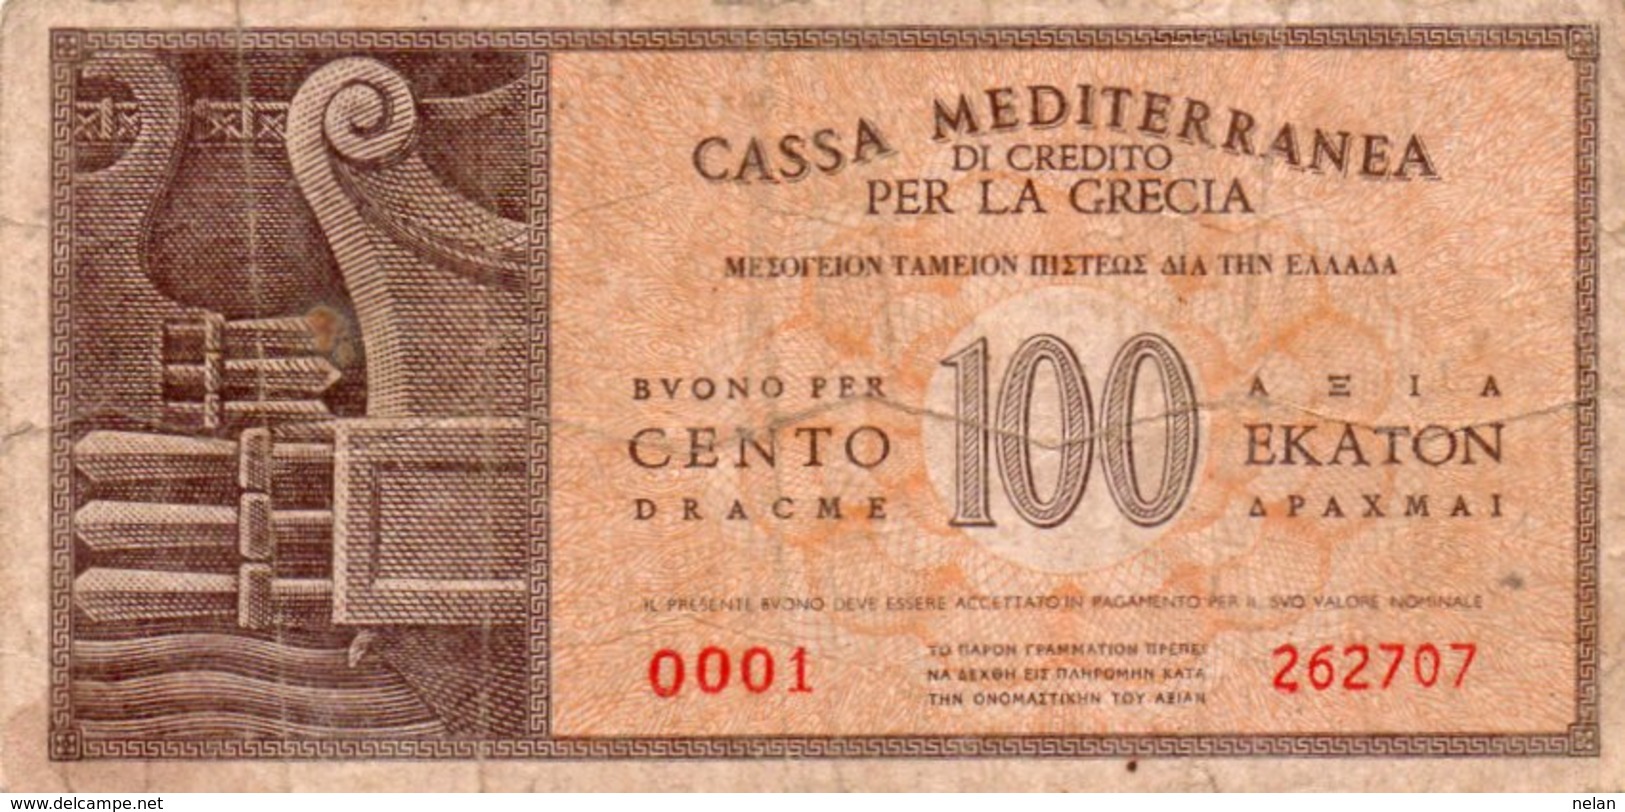 GRECIA 100 DRACME 1941 -CASSA MEDITERRANEA PER LA GRECIA-Military Issues P-M4  VG++ - Grecia